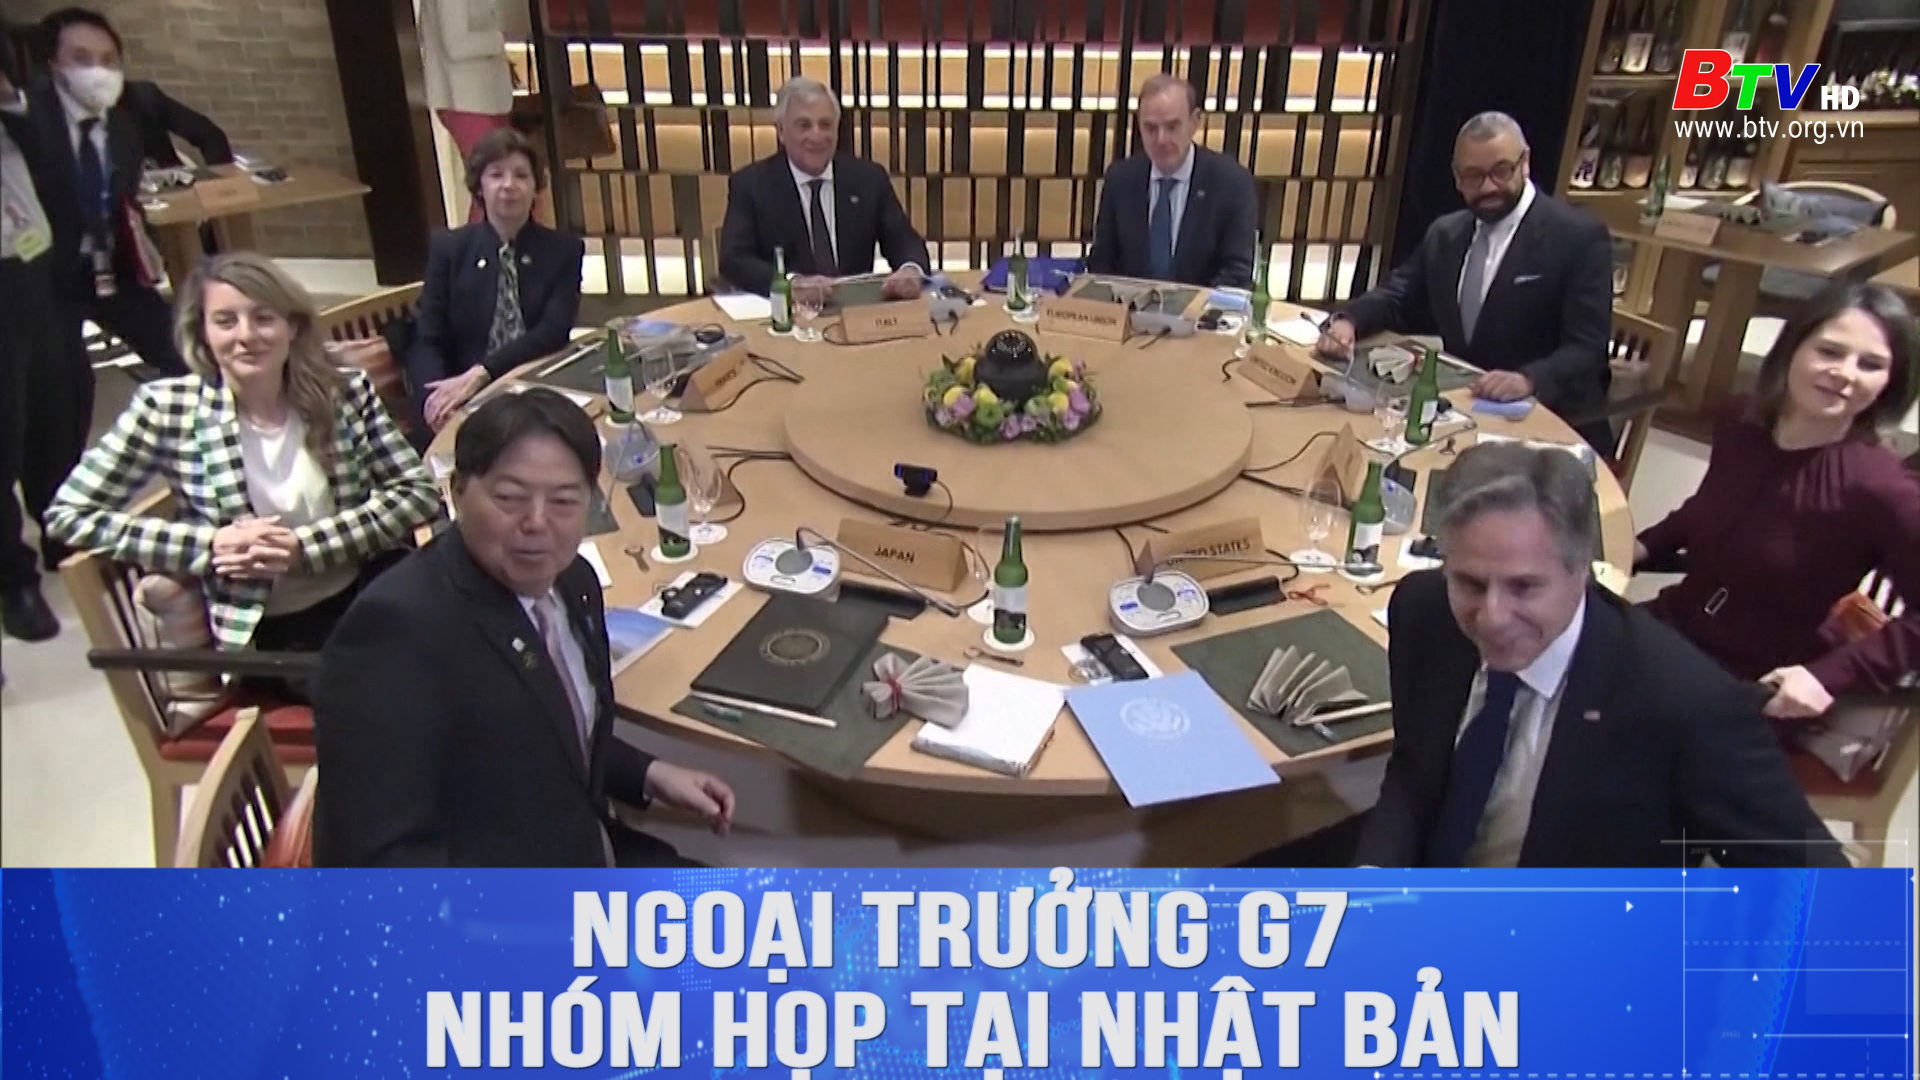 Ngoại trưởng G7 nhóm họp tại Nhật Bản